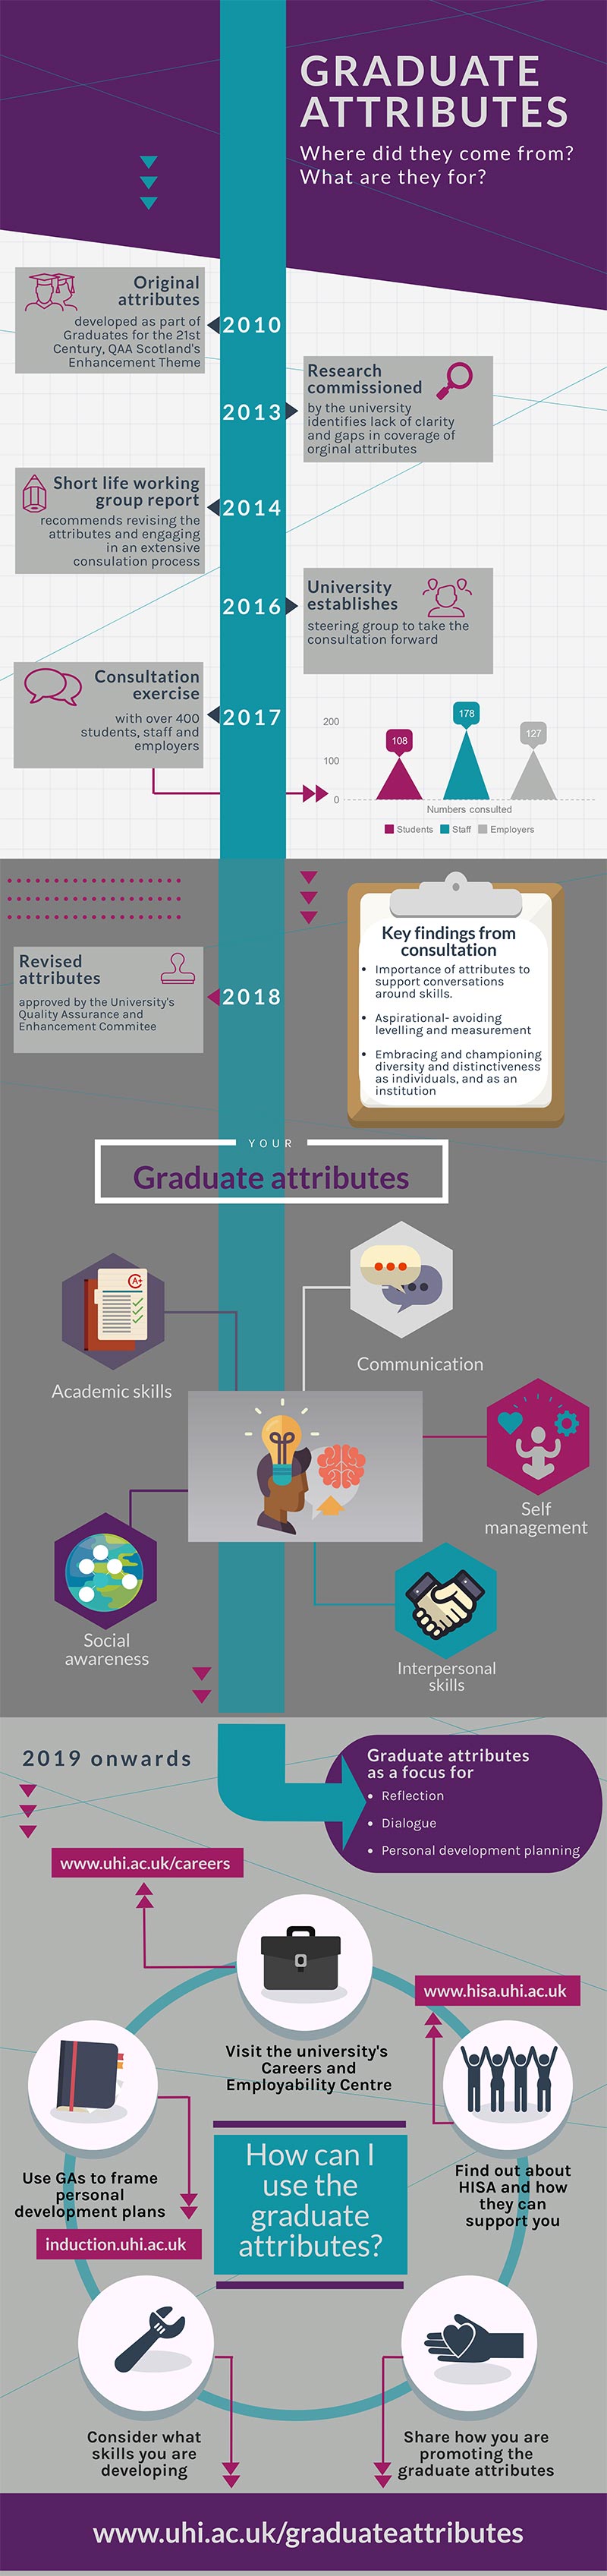 graduate attributes infographic